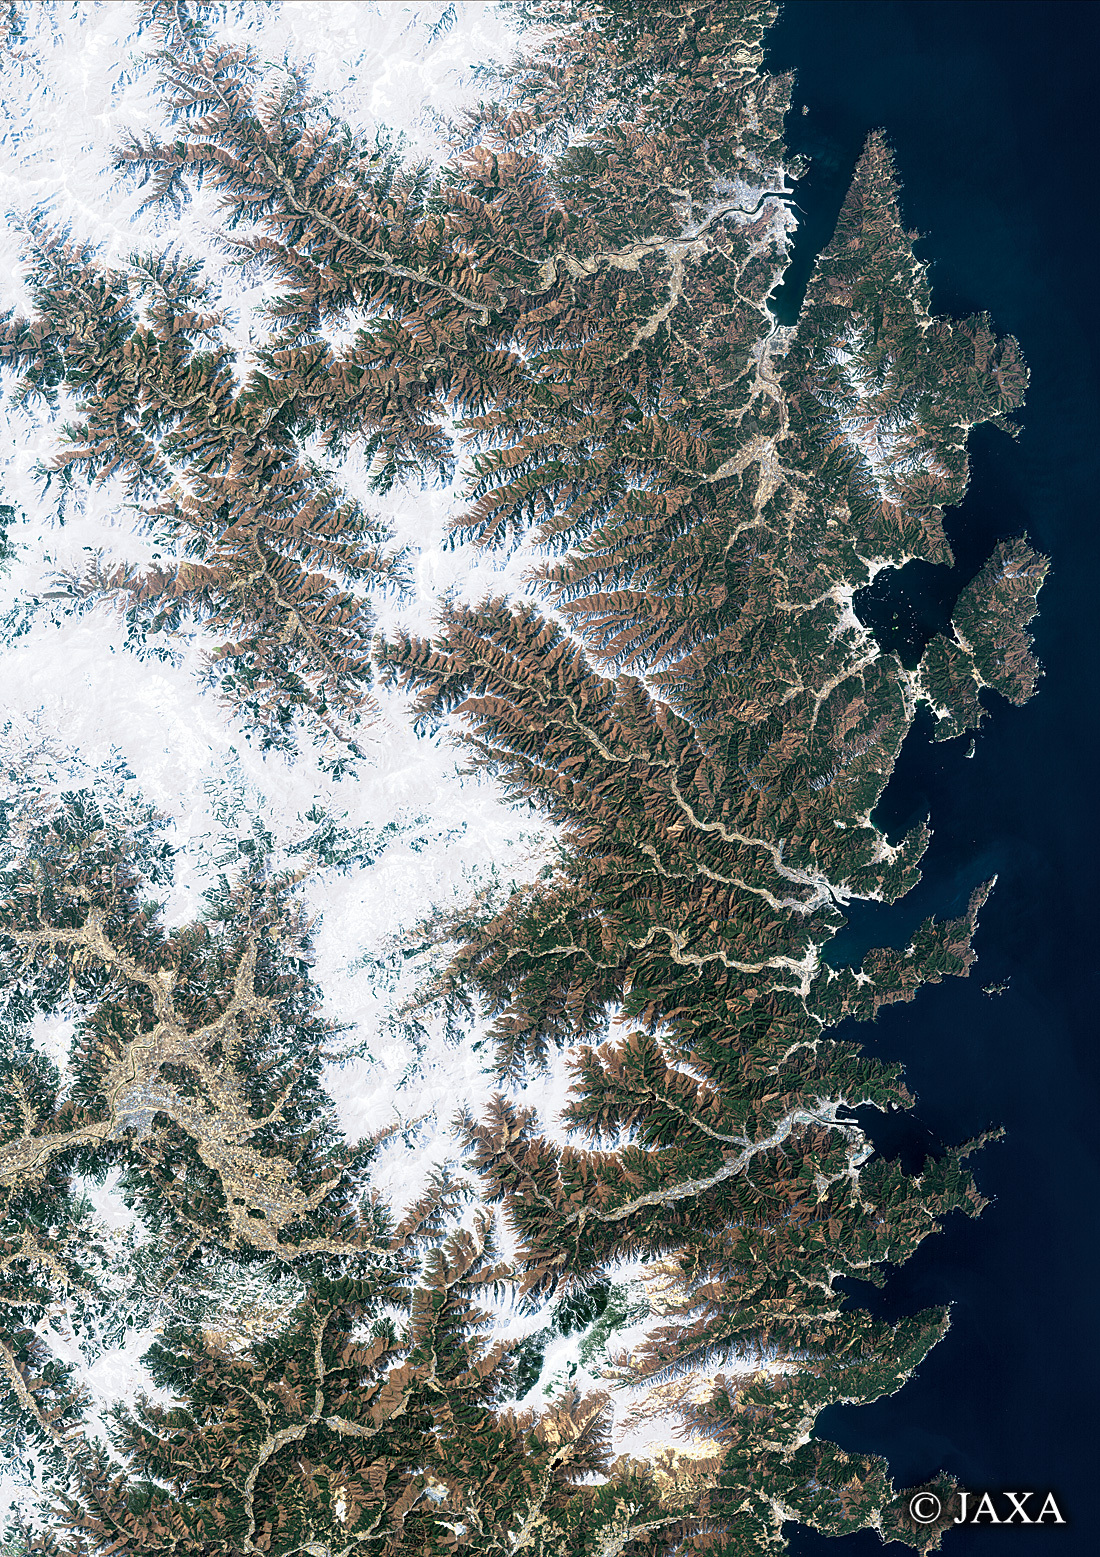 だいちから見た日本の都市 三陸海岸:衛星画像